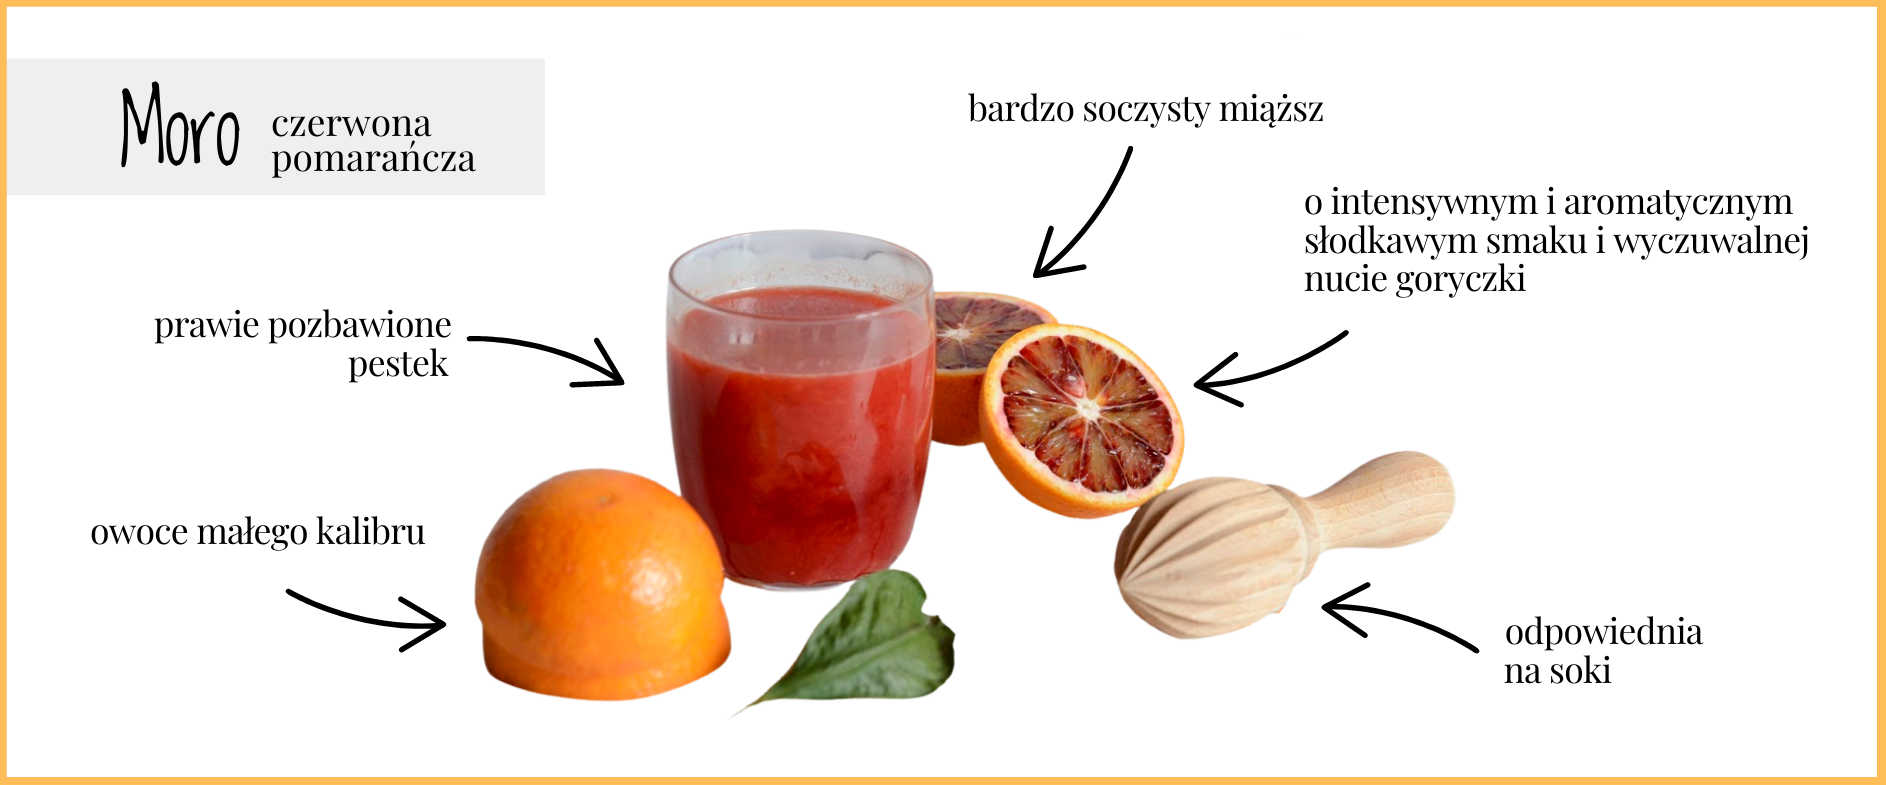 Moro: czerwona pomarańcza